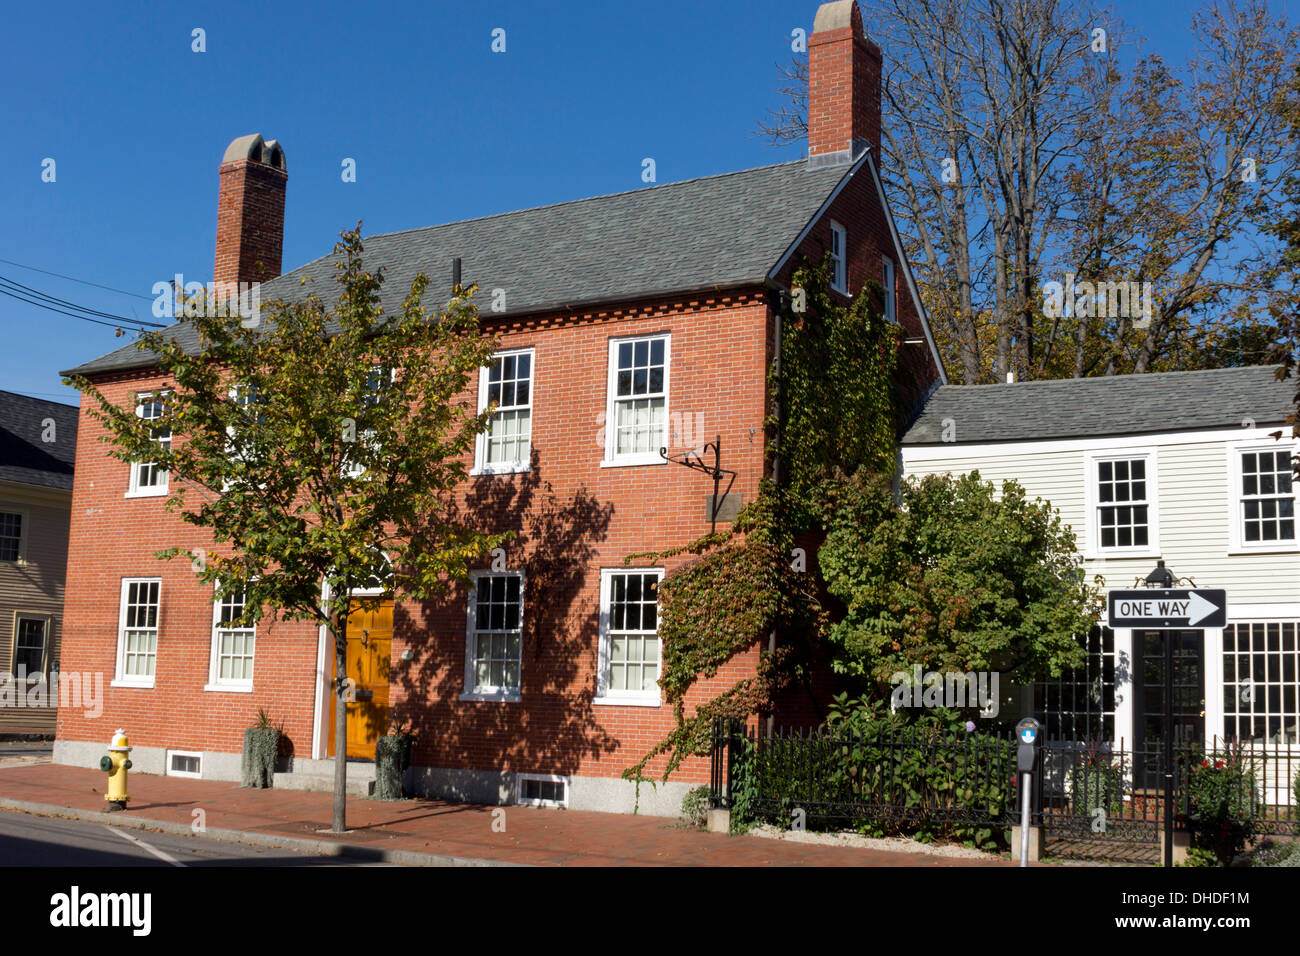 Maison traditionnelle dans la région de Portsmouth, New Hampshire, USA Banque D'Images